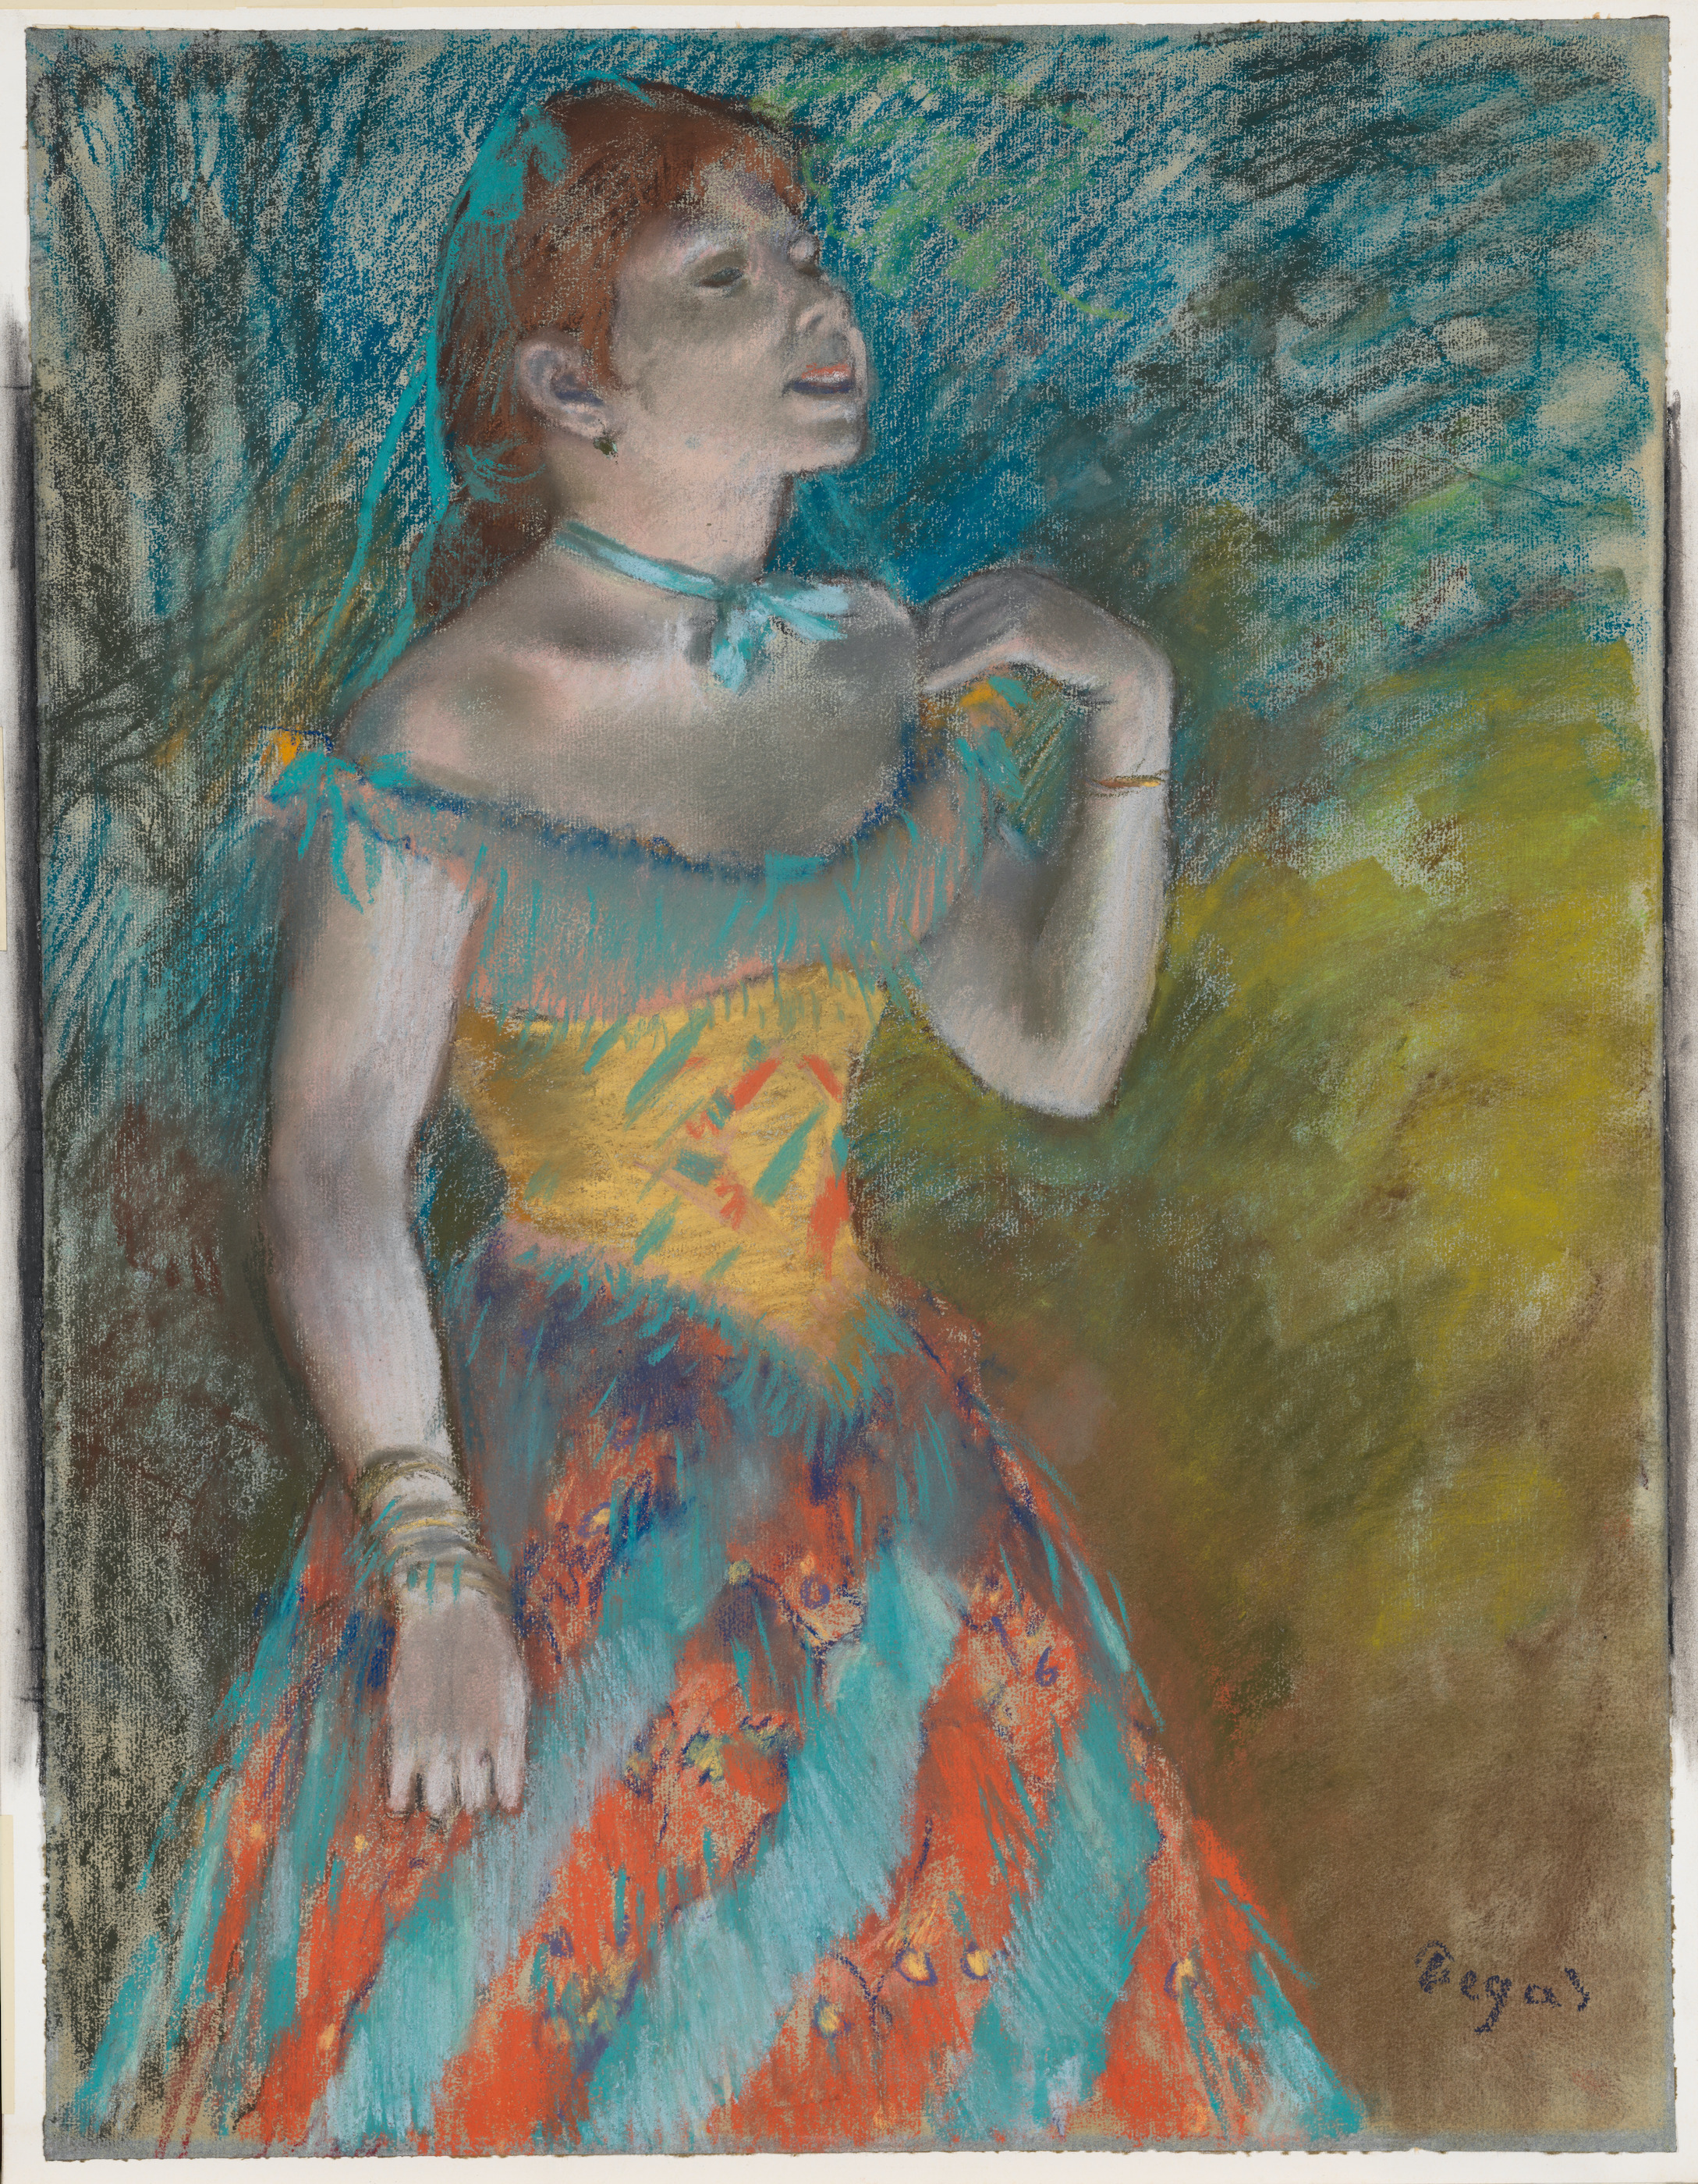 穿綠裙的歌手 by Edgar Degas - 約 1884 年 - 60.3 x 46.4 釐米 